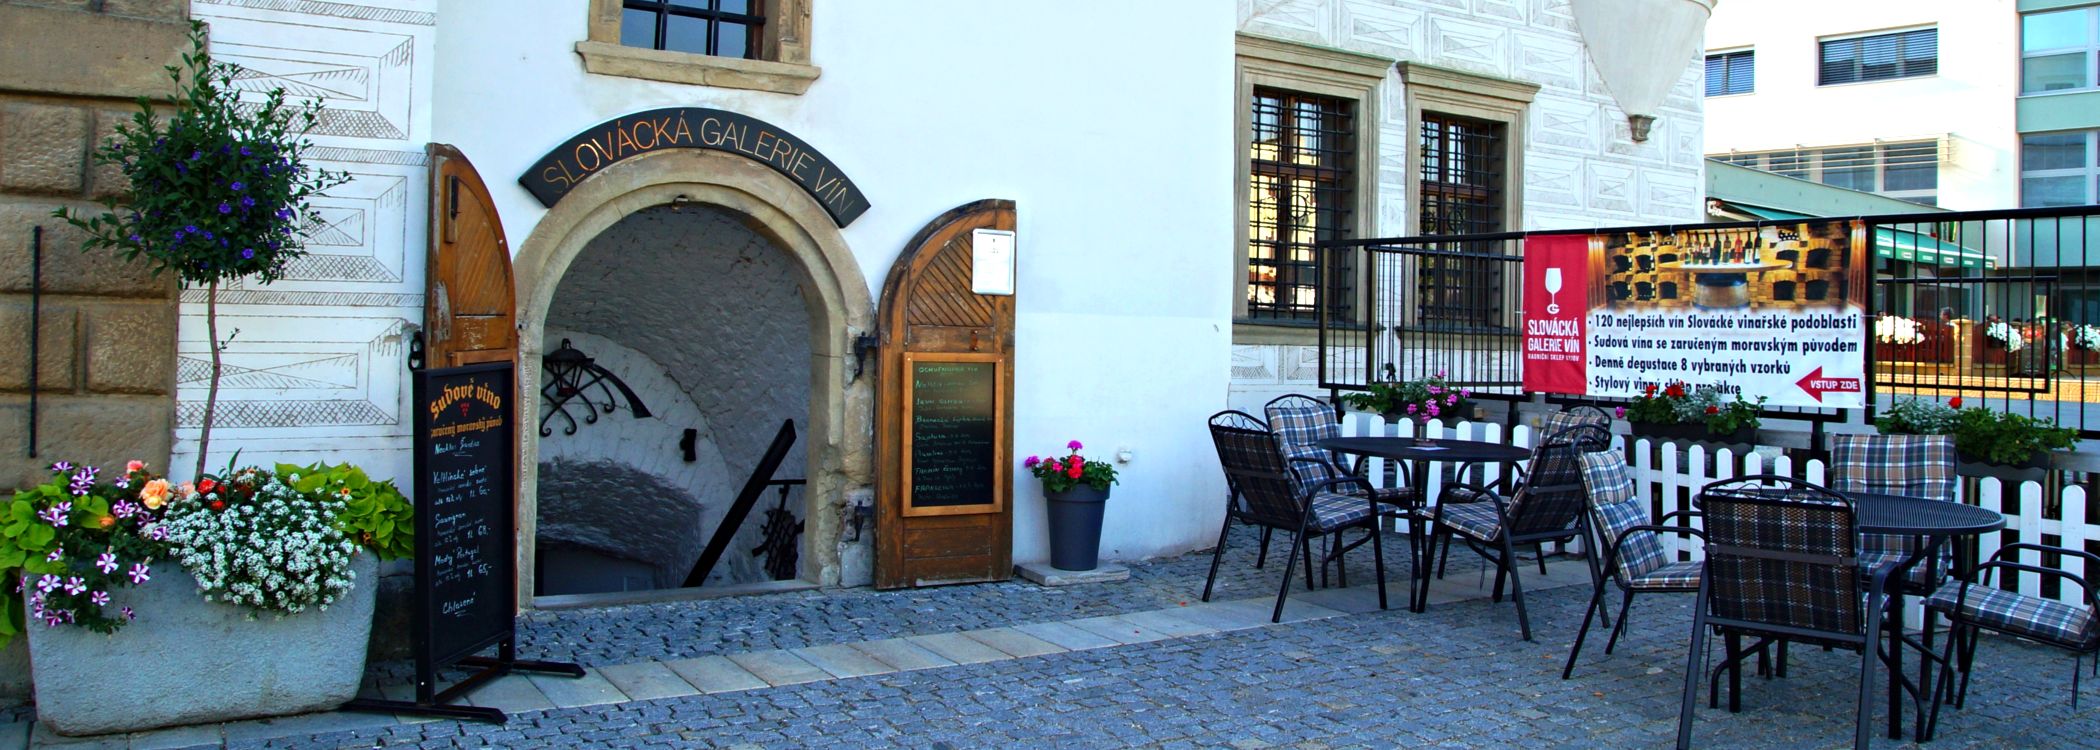 Slovácká galerie vín - vstup